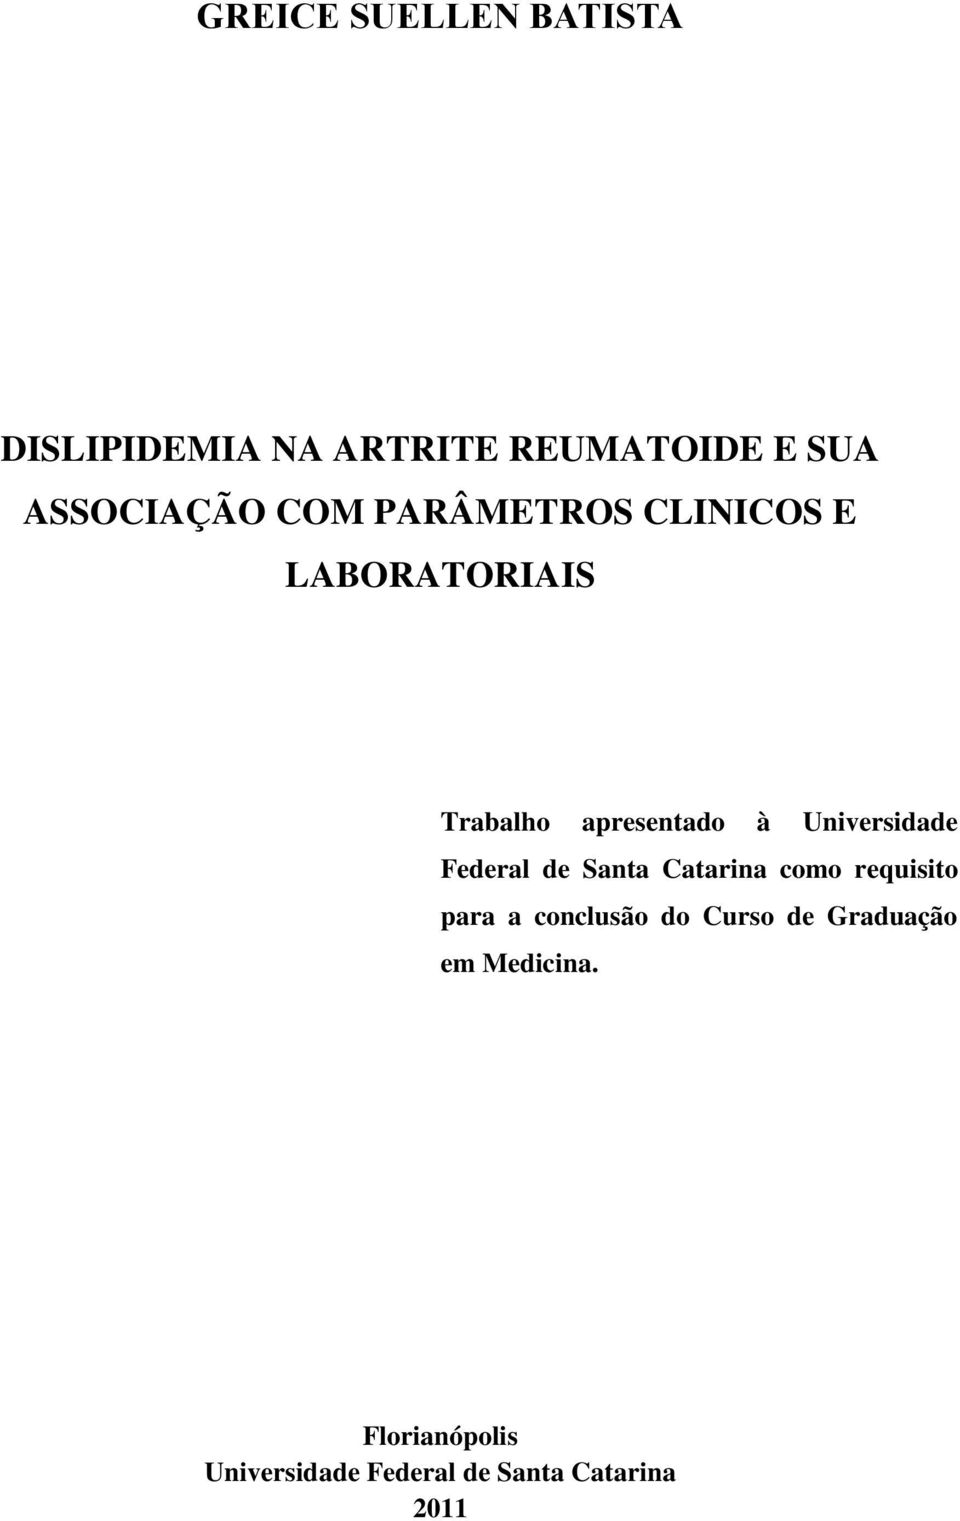 Federal de Santa Catarina como requisito para a conclusão do Curso de